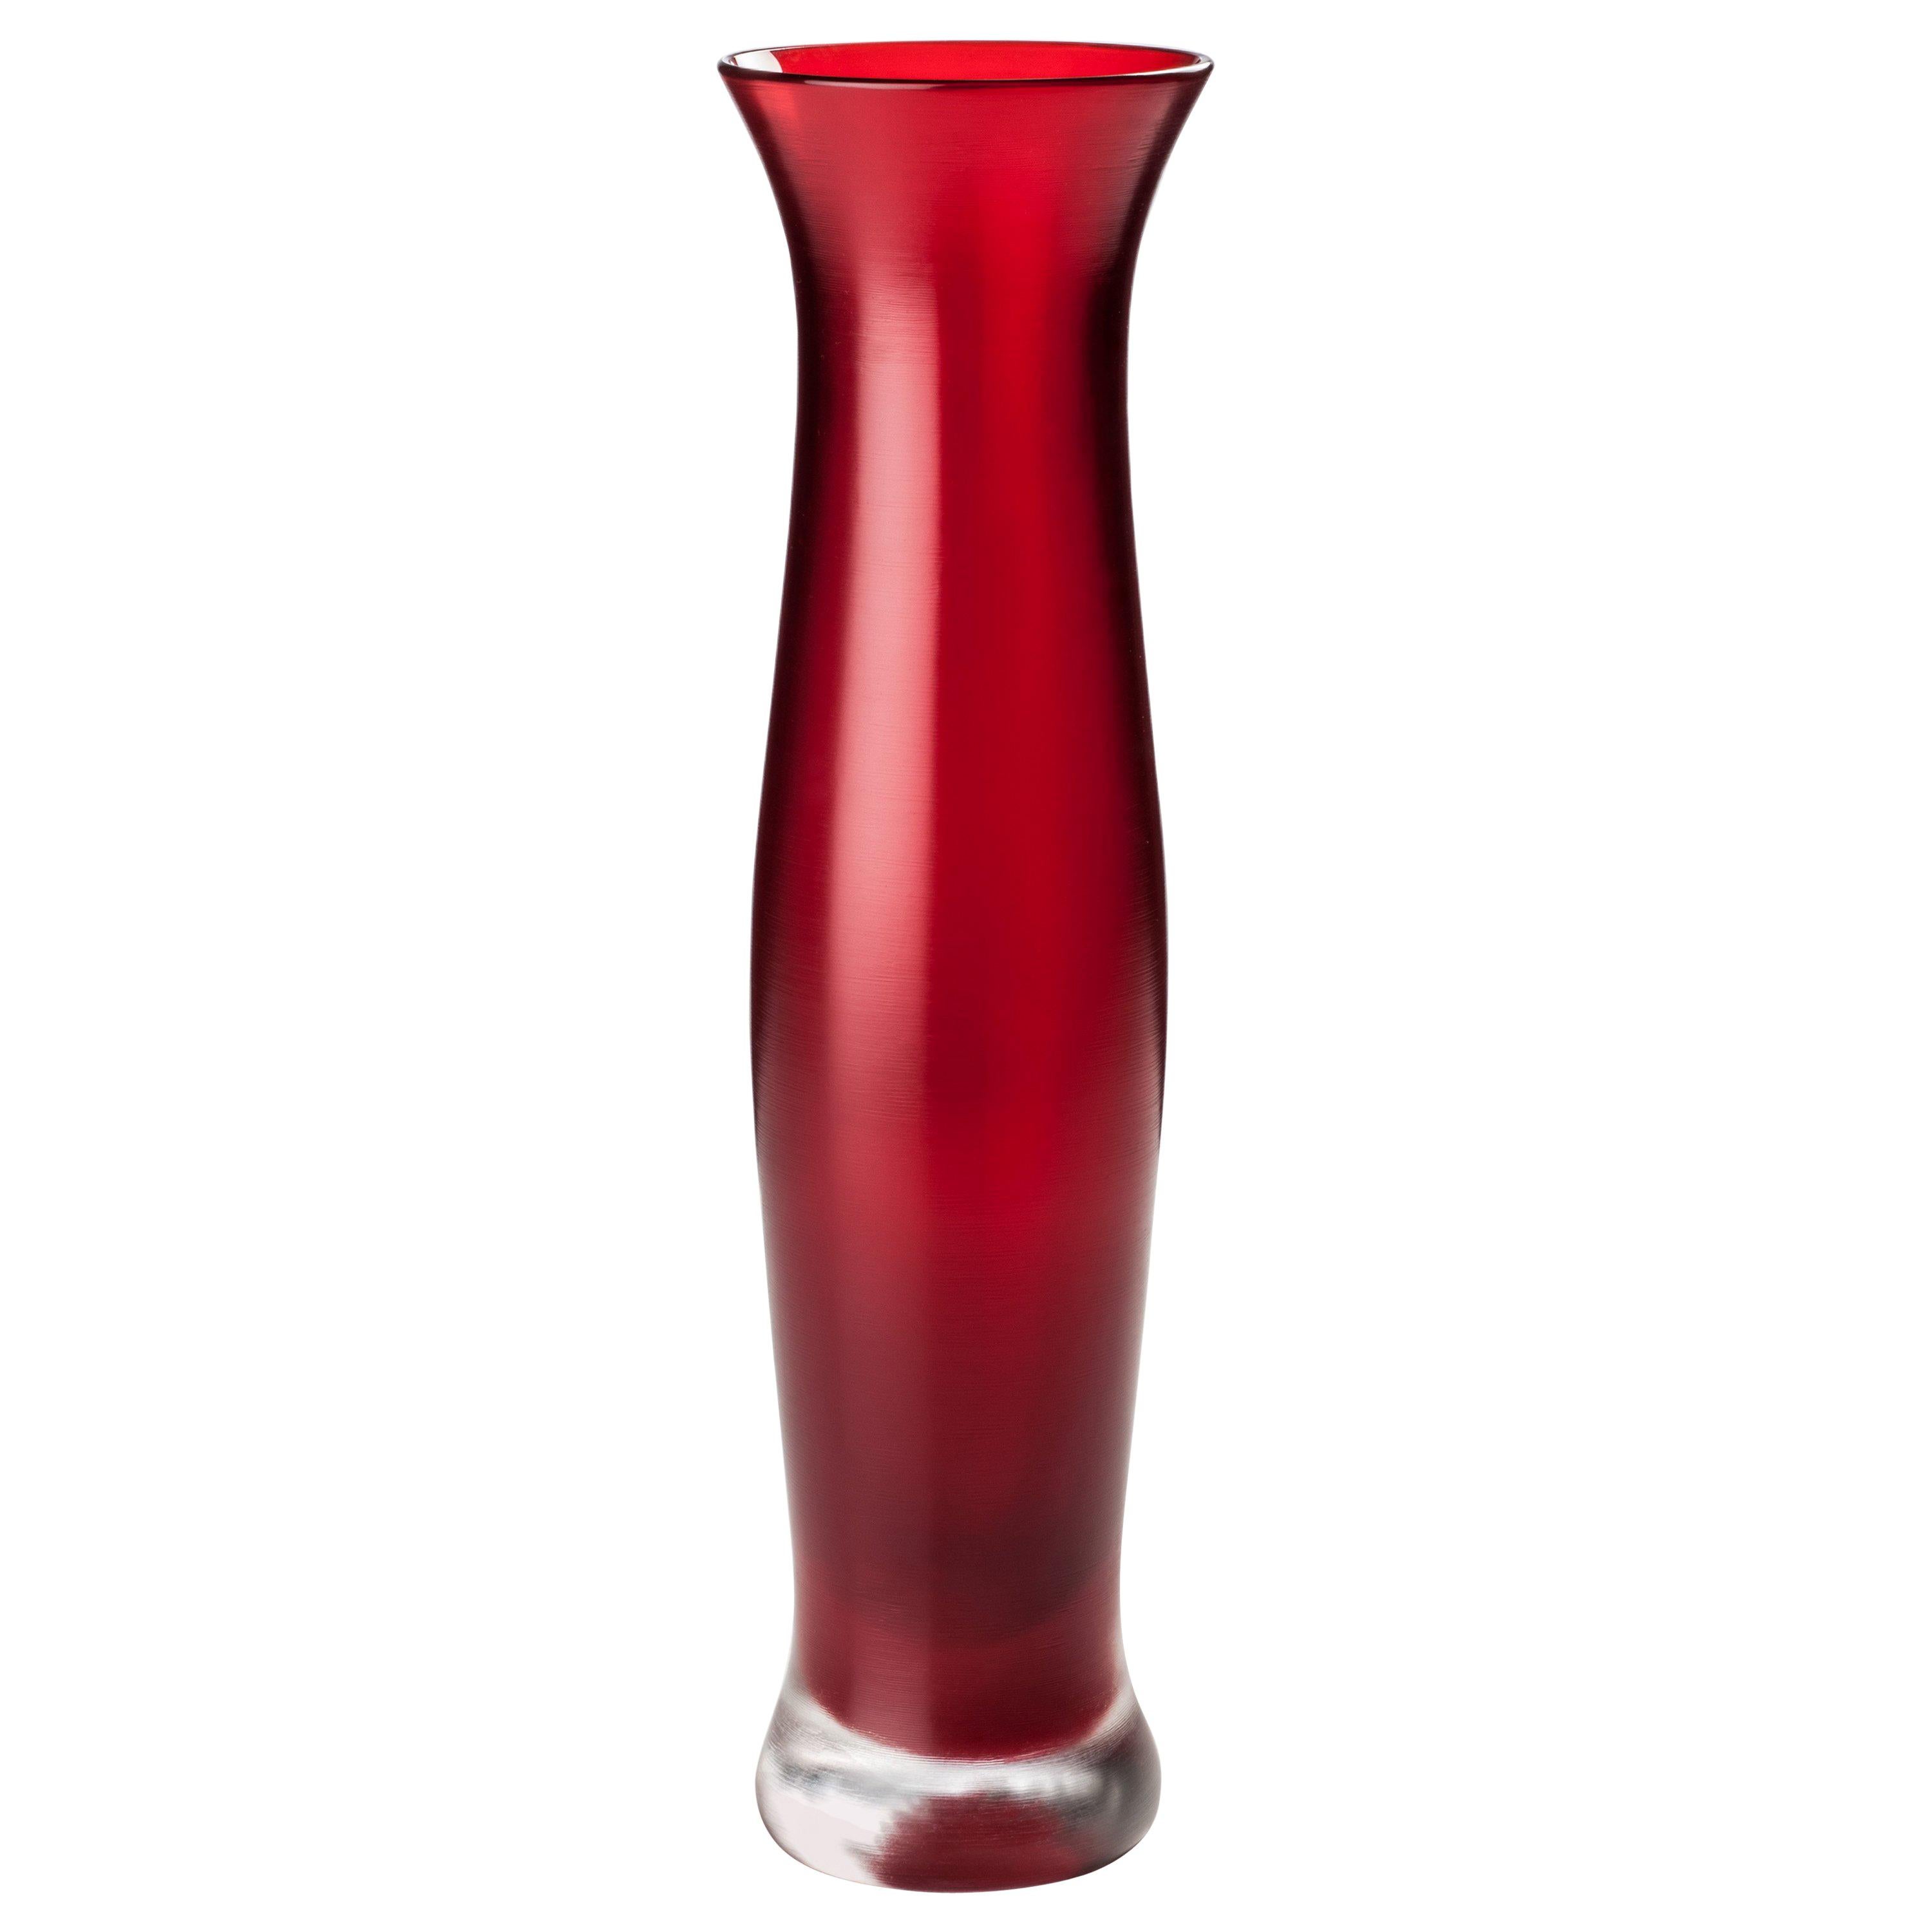 Venini Incisi Glass Vase in Garnet Red by Paolo Venini